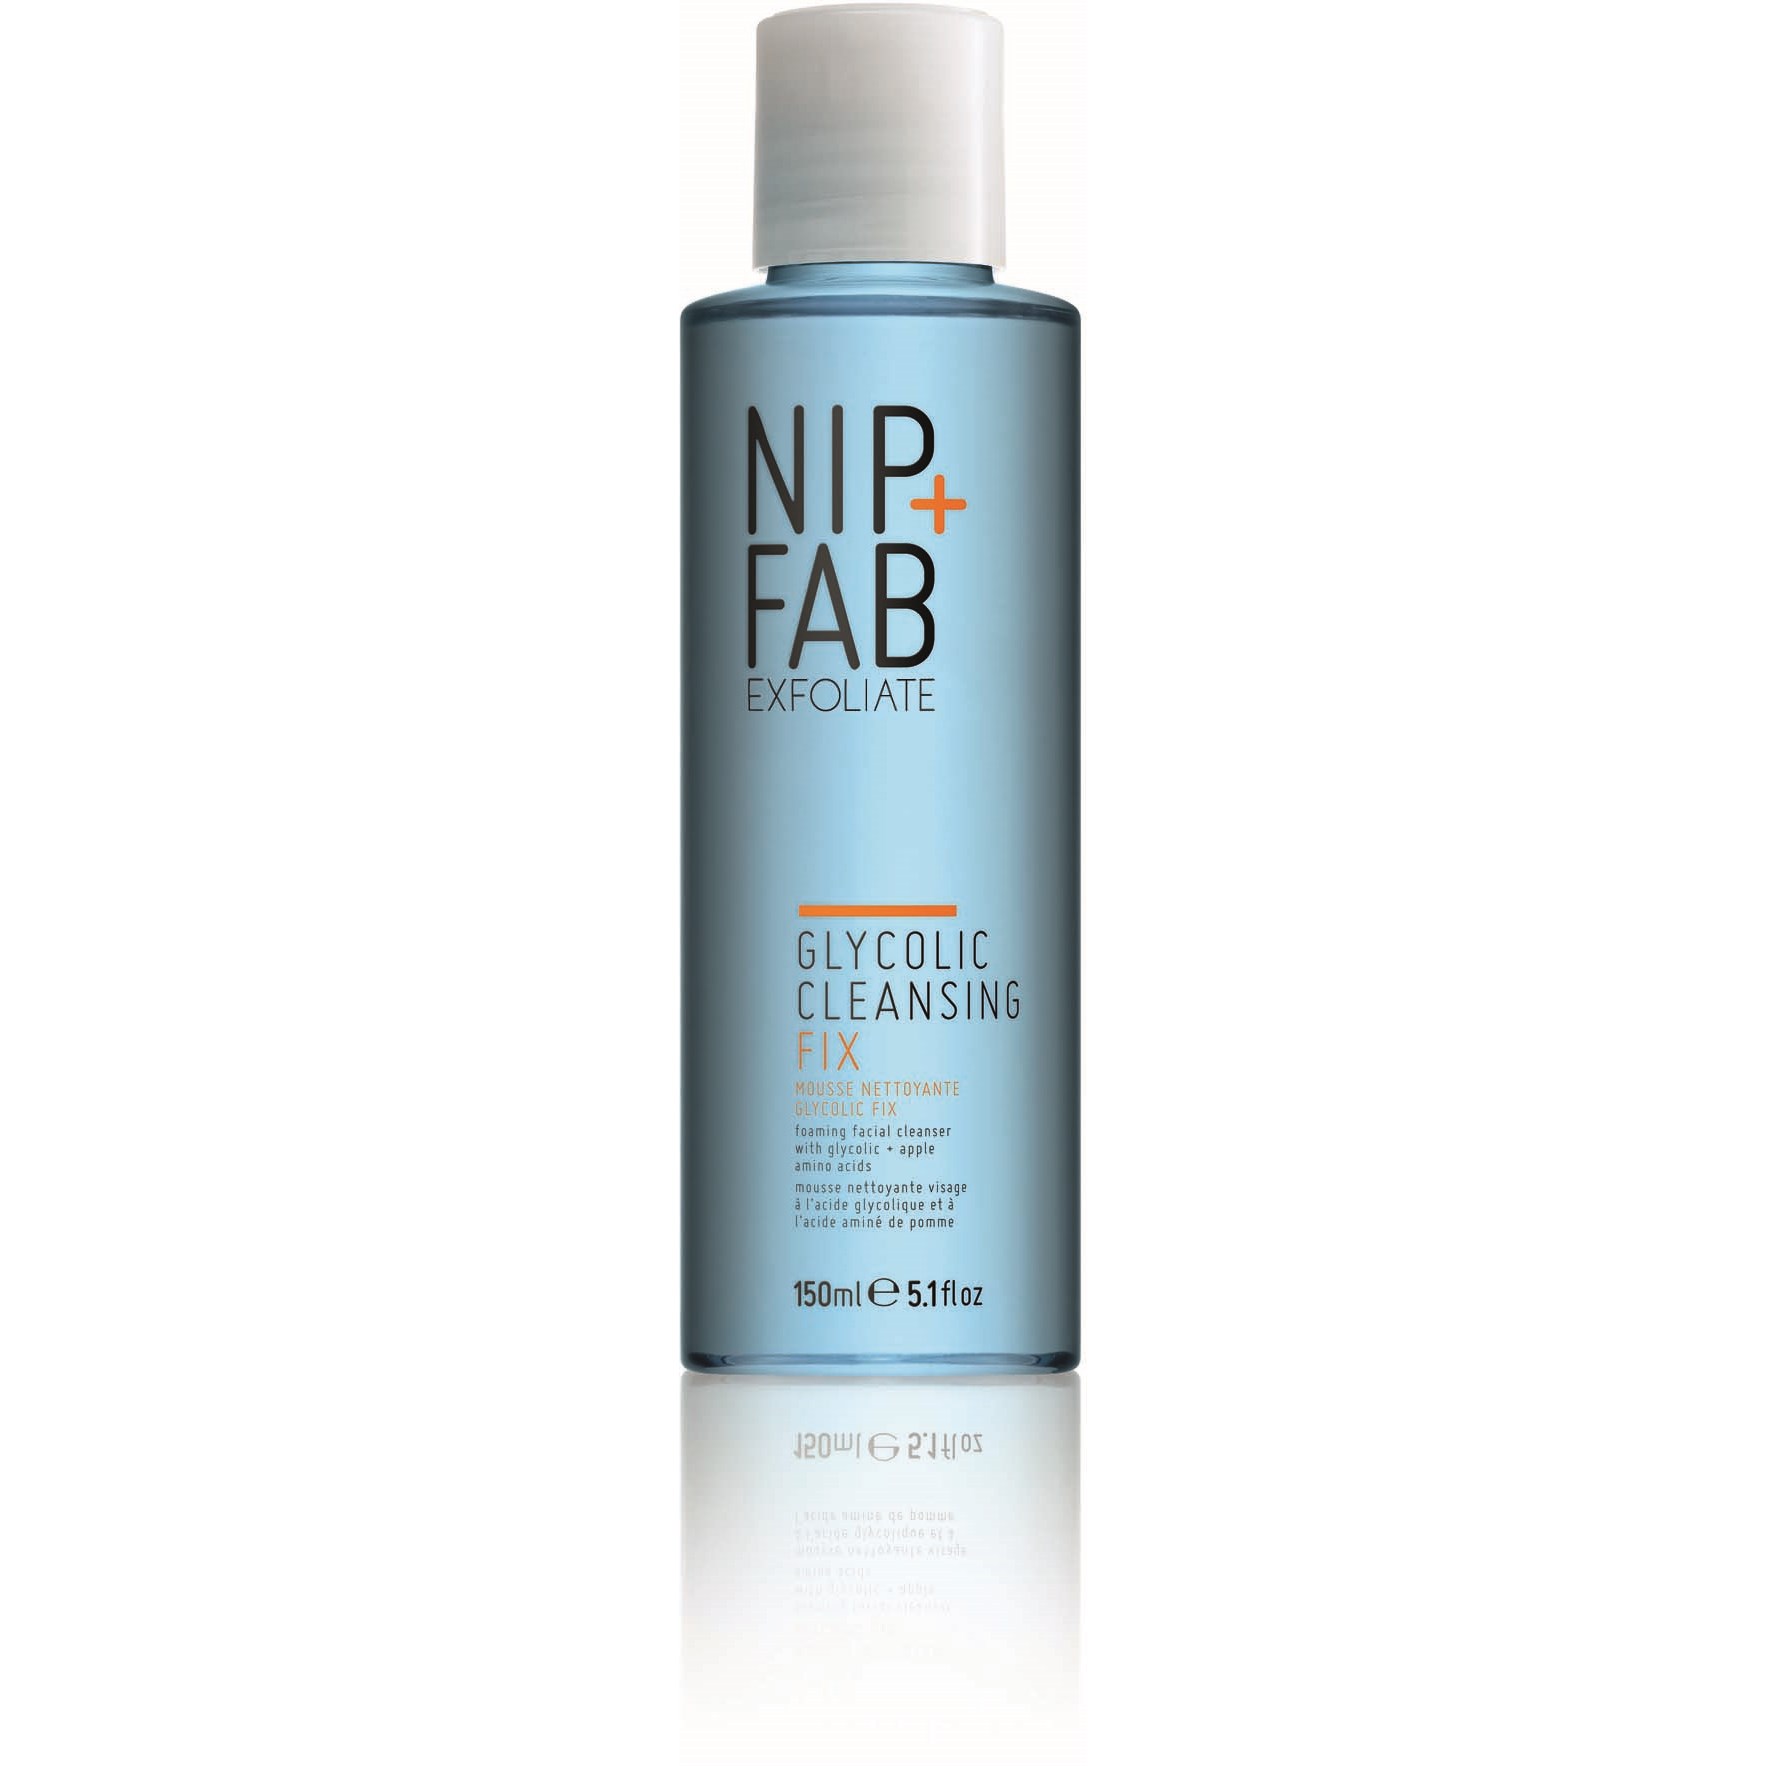 Фото - Засіб для очищення обличчя і тіла NIP+FAB Exfoliate Glycolic Cleansing Fix 150 ml